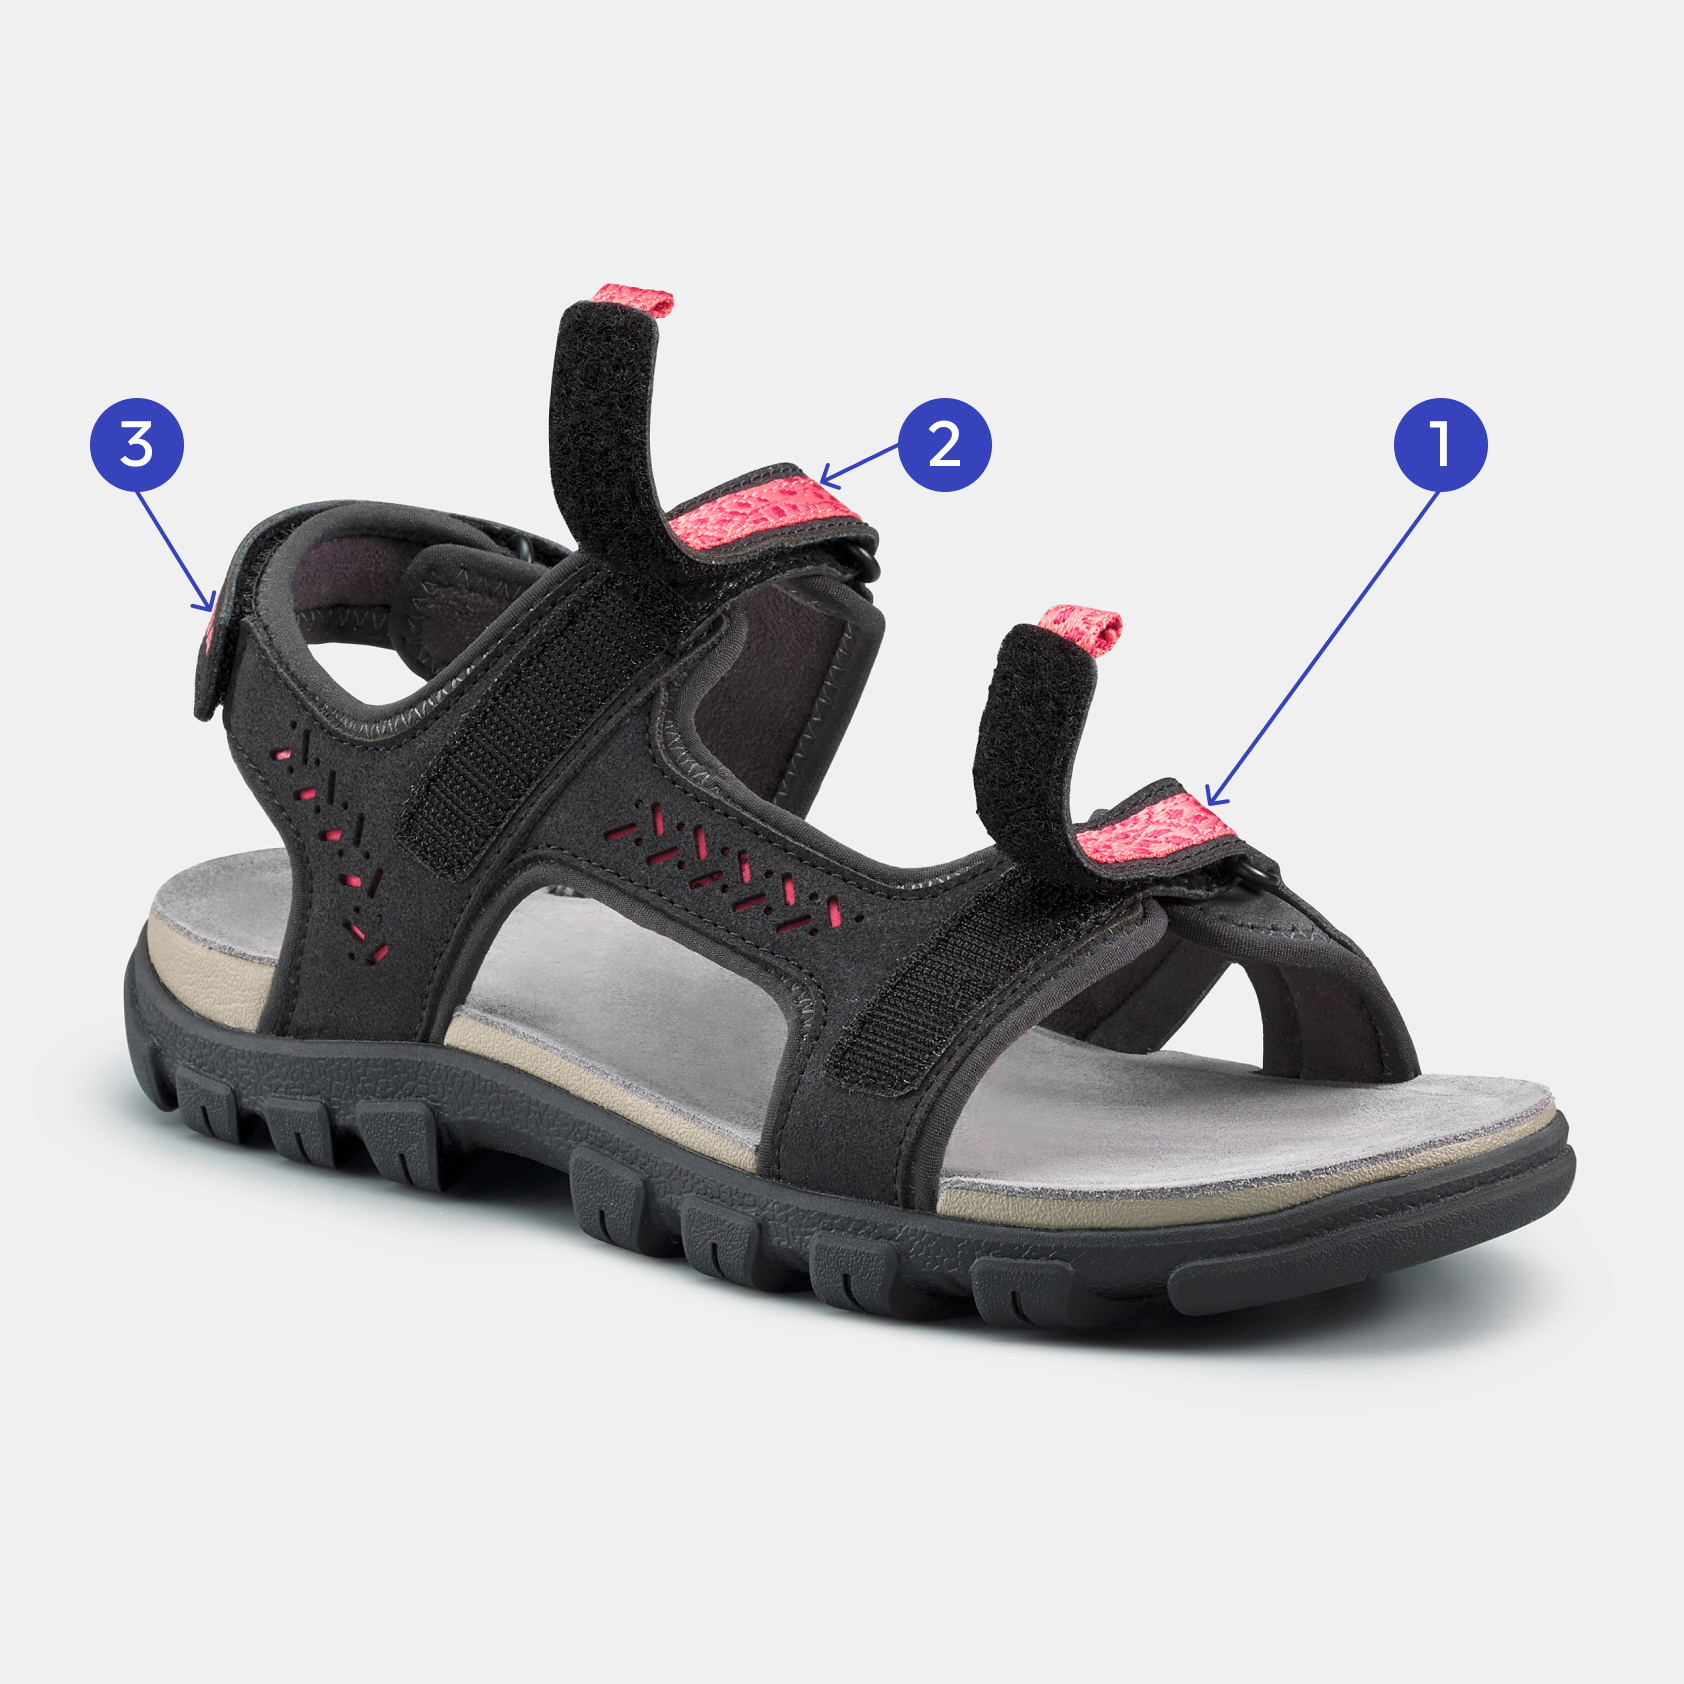 Choisir ses sandales de randonnée pour femme aux pieds sensibles